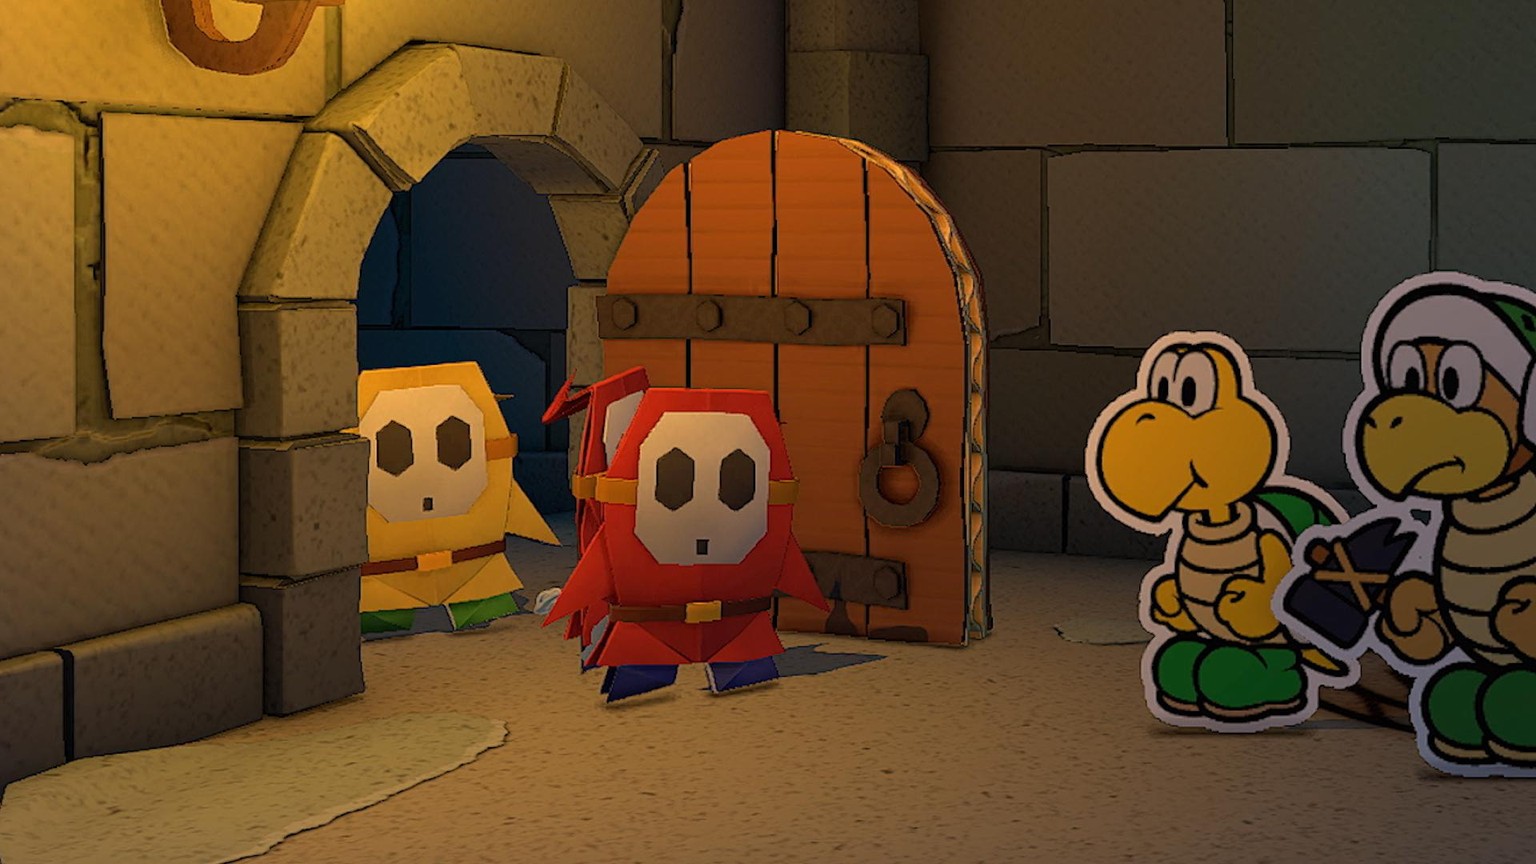 Immer wieder trifft man auf alte bekannte Figuren aus dem Super Mario-Universum.